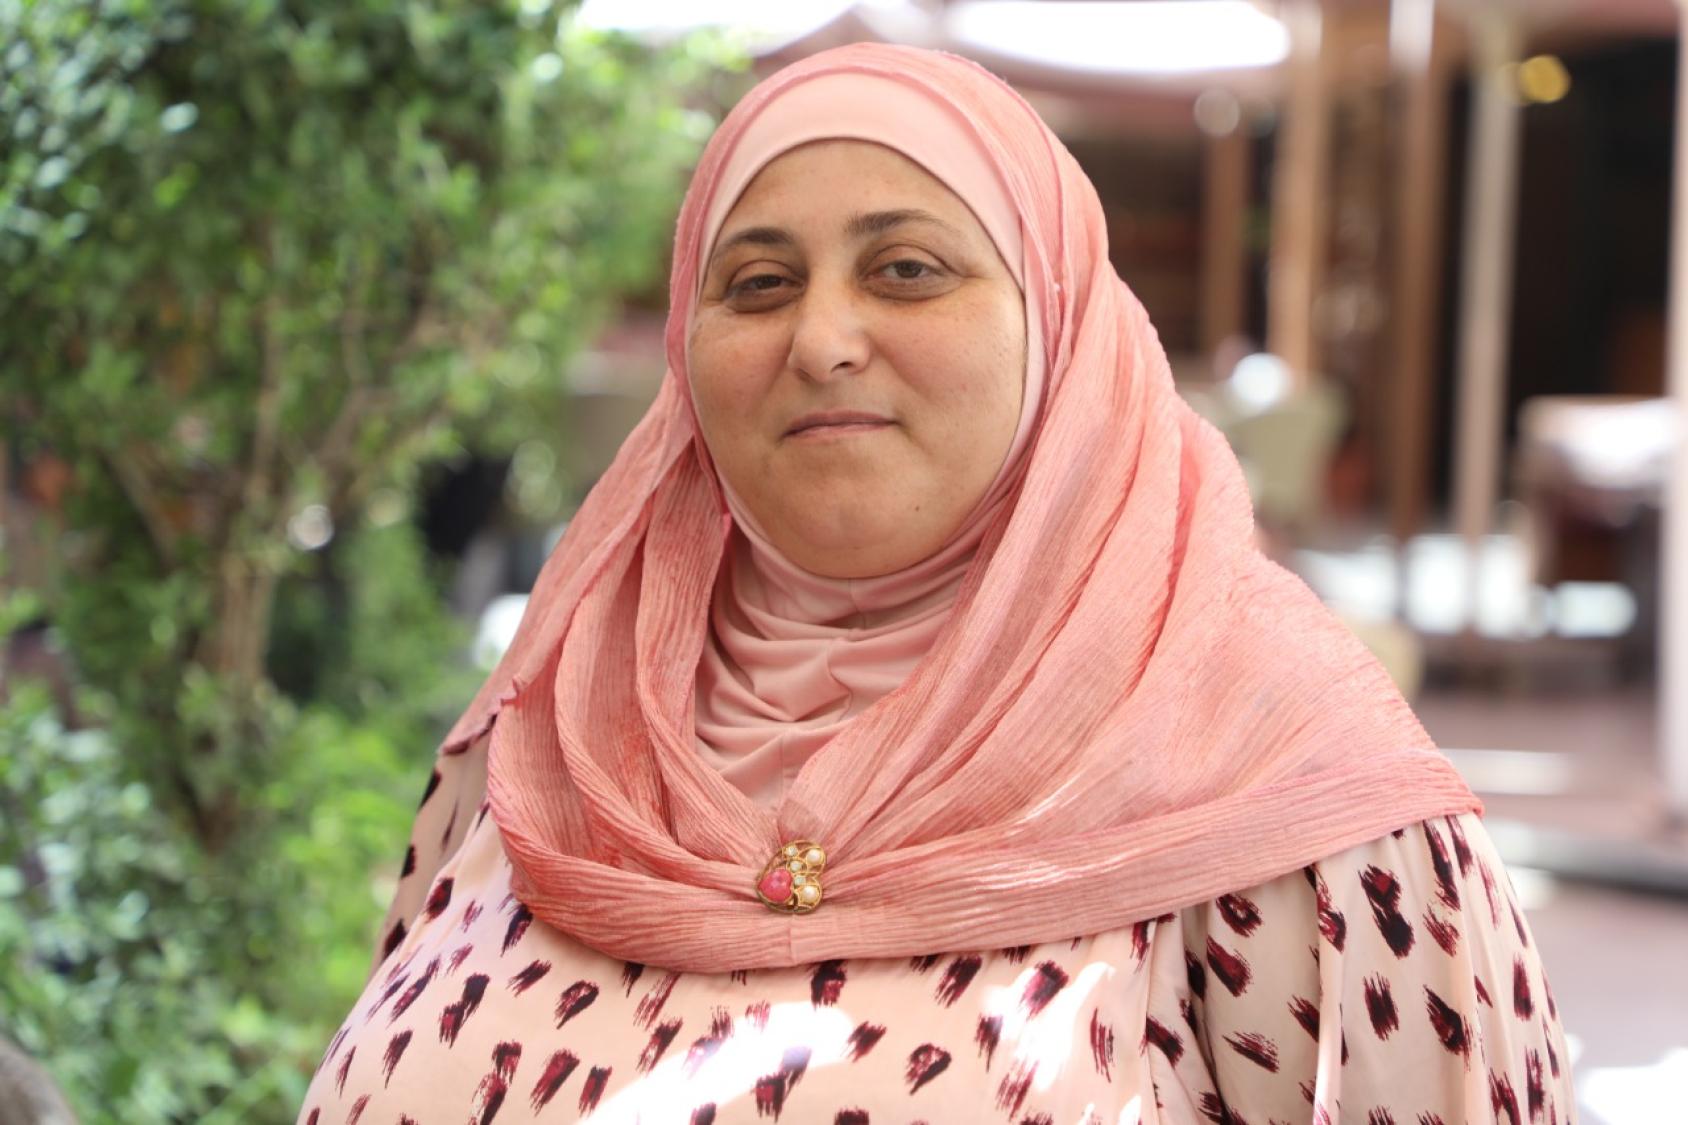 ربى، مشاركة في مشروع "إنشاء مساحة للنساء بانيات السلام" المنفّذ من قبل الأمم المتّحدة في لبنان عبر هيئة الأمم المتّحدة للمرأة